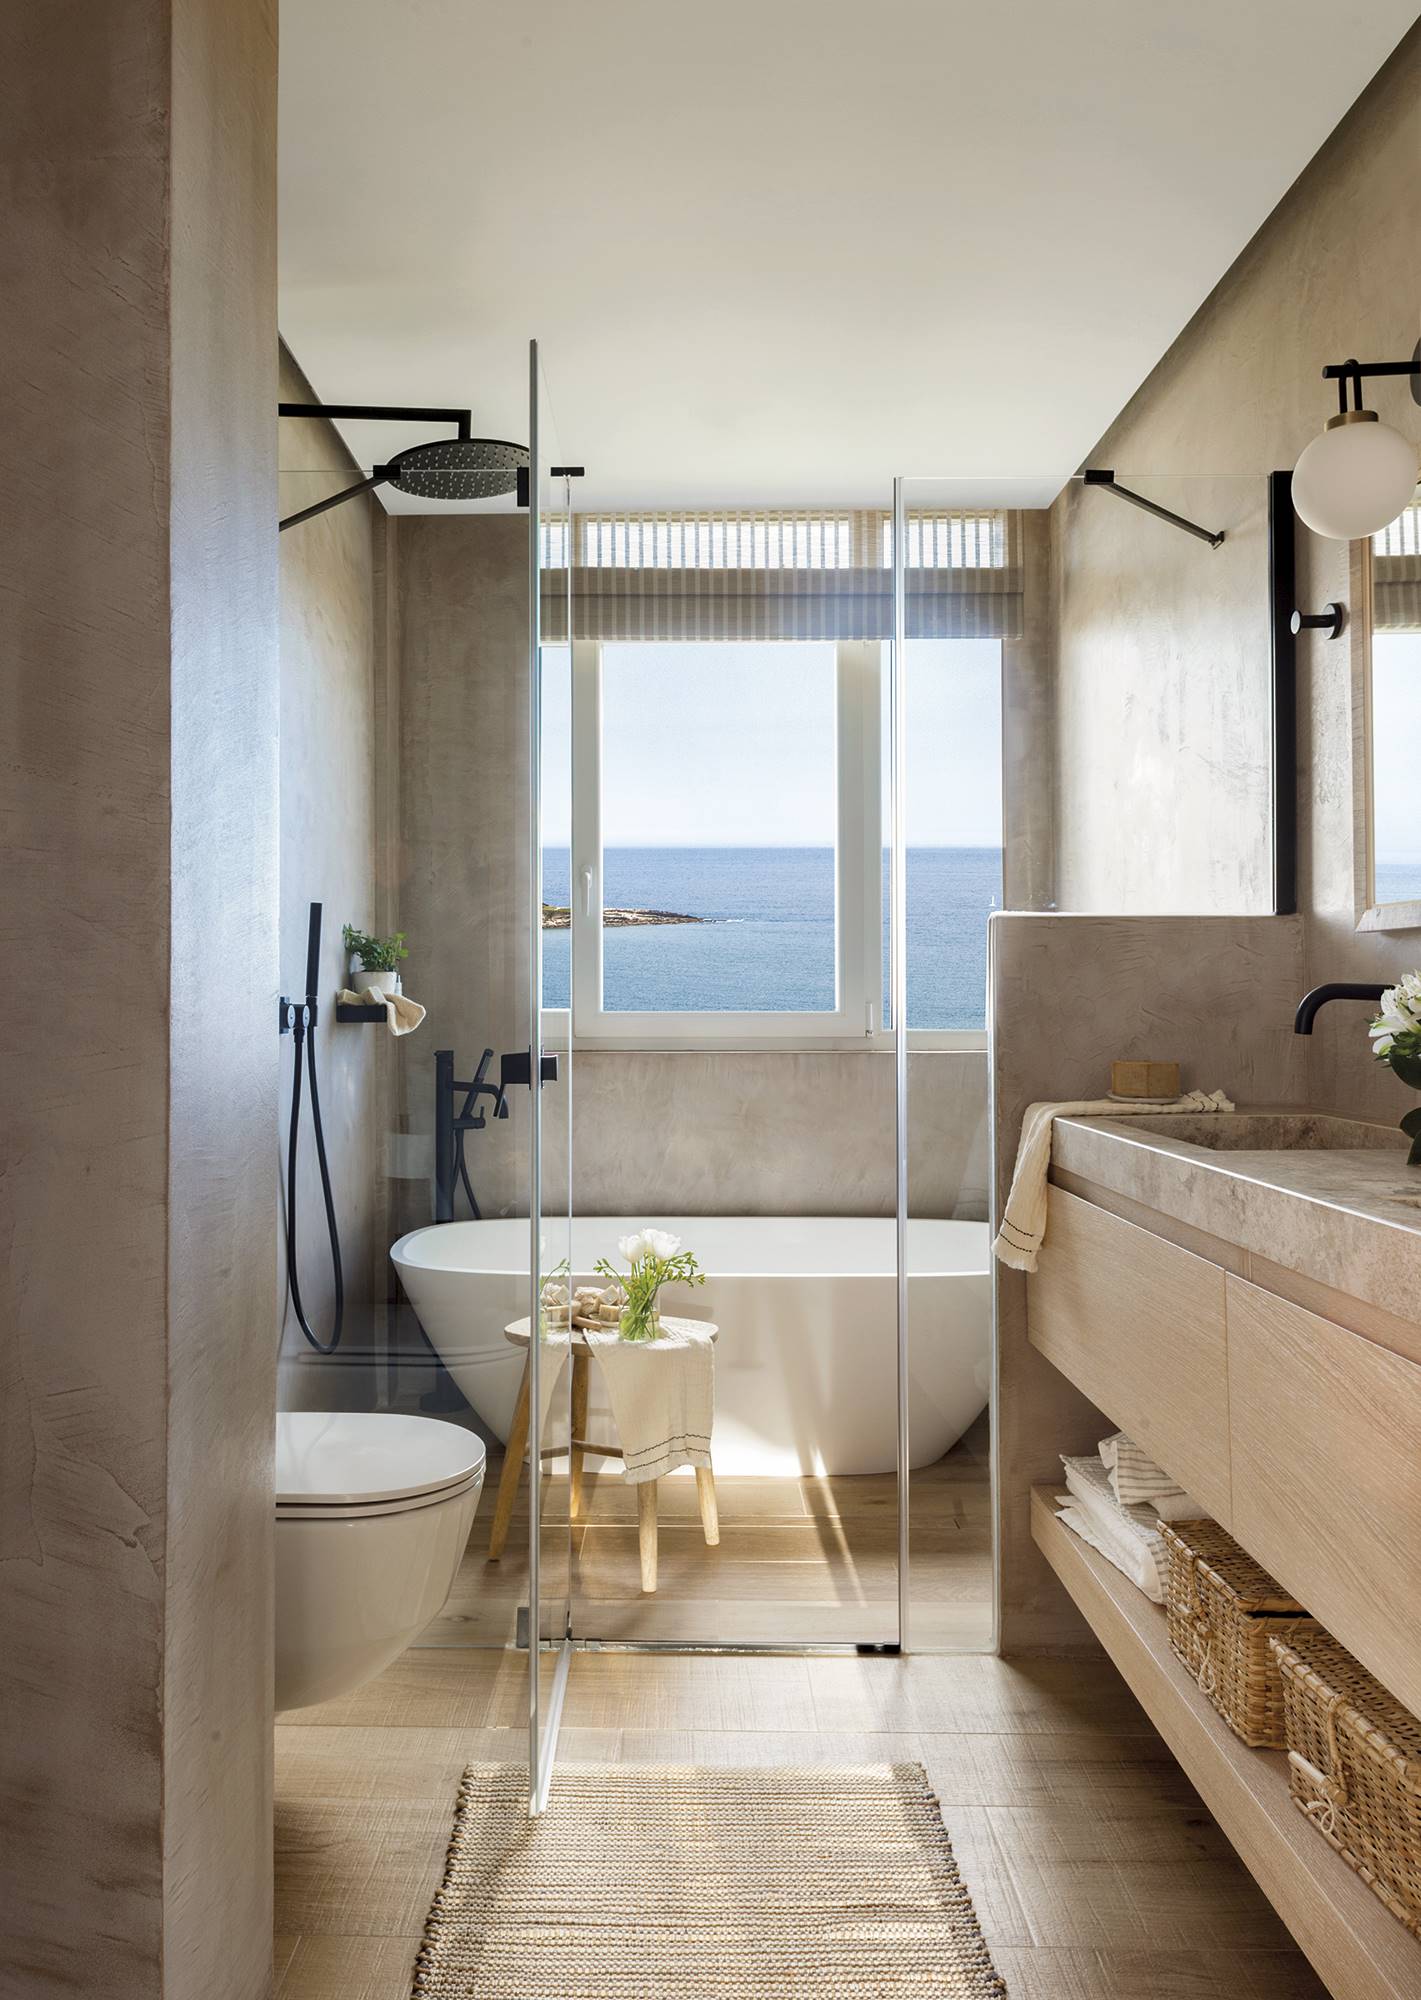 Baño moderno con una bañera exenta blanca y vistas al mar.